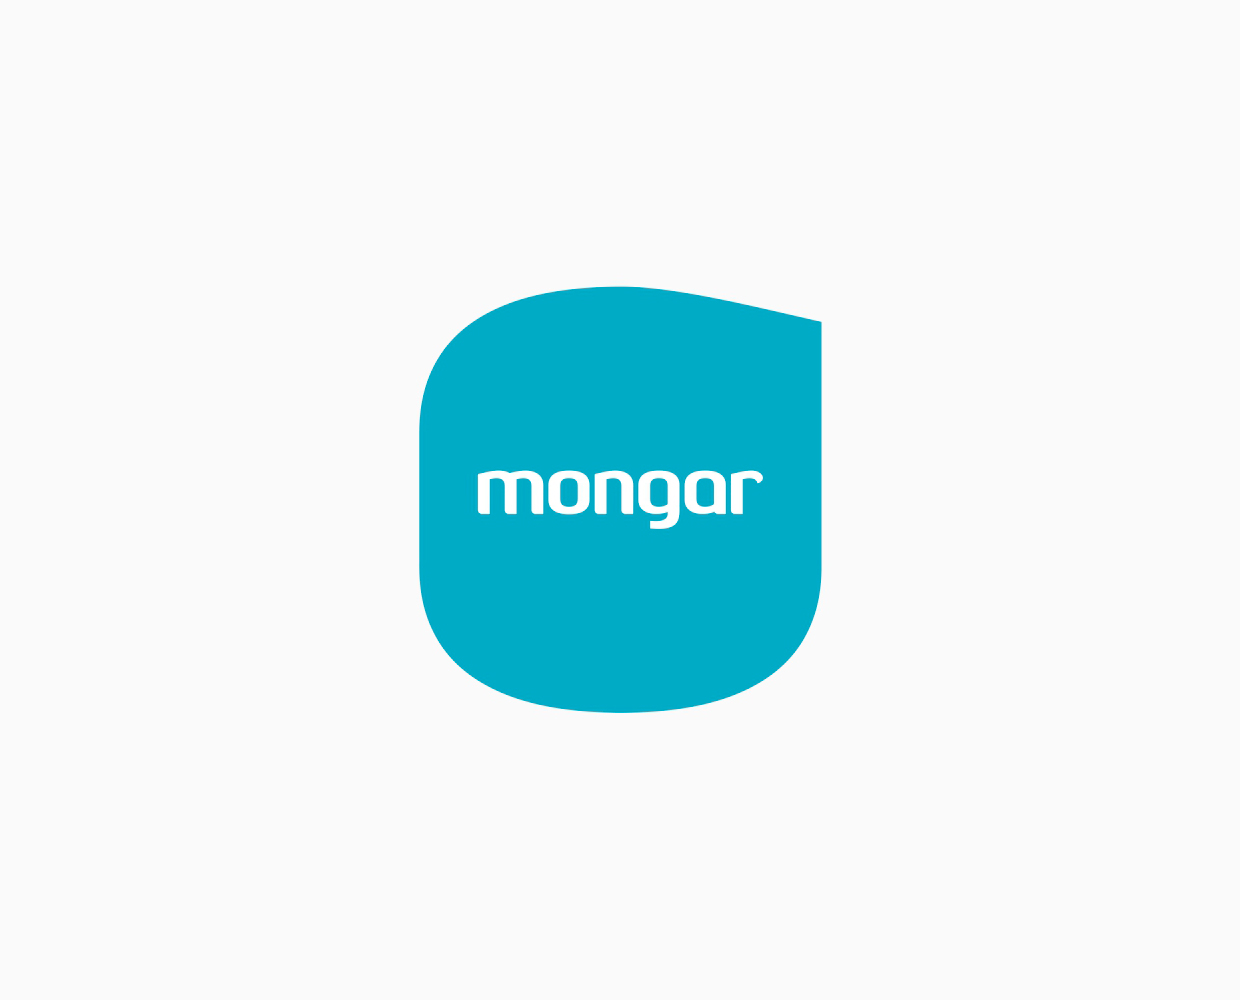 mongar higiene logo - javier real